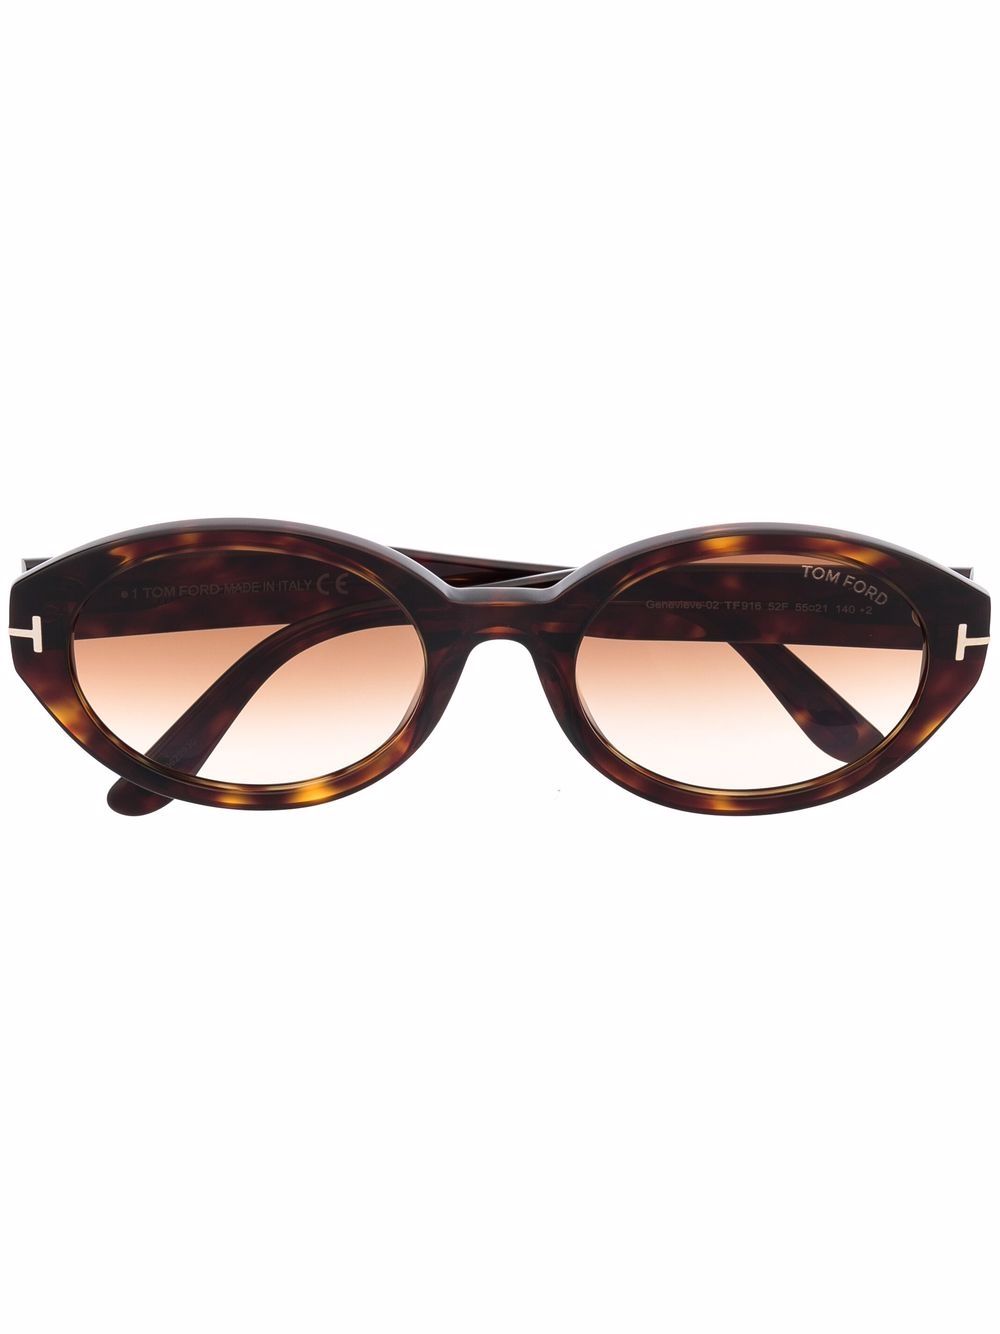 фото Tom ford eyewear солнцезащитные очки черепаховой расцветки